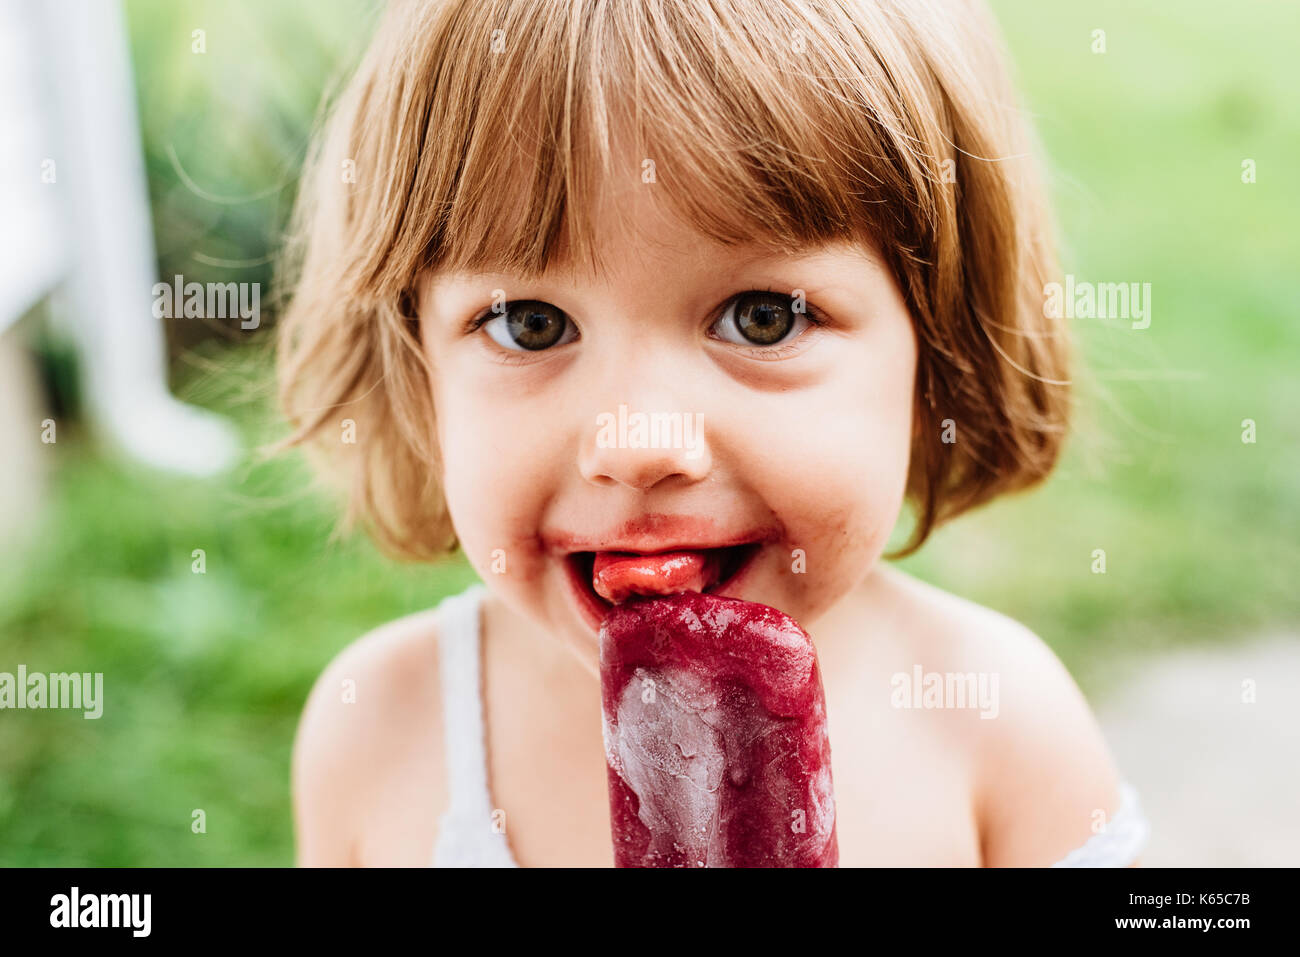 Ein kleines Mädchen isst eine Traube Eis am Stiel, Eis pop Popsicle. Stockfoto